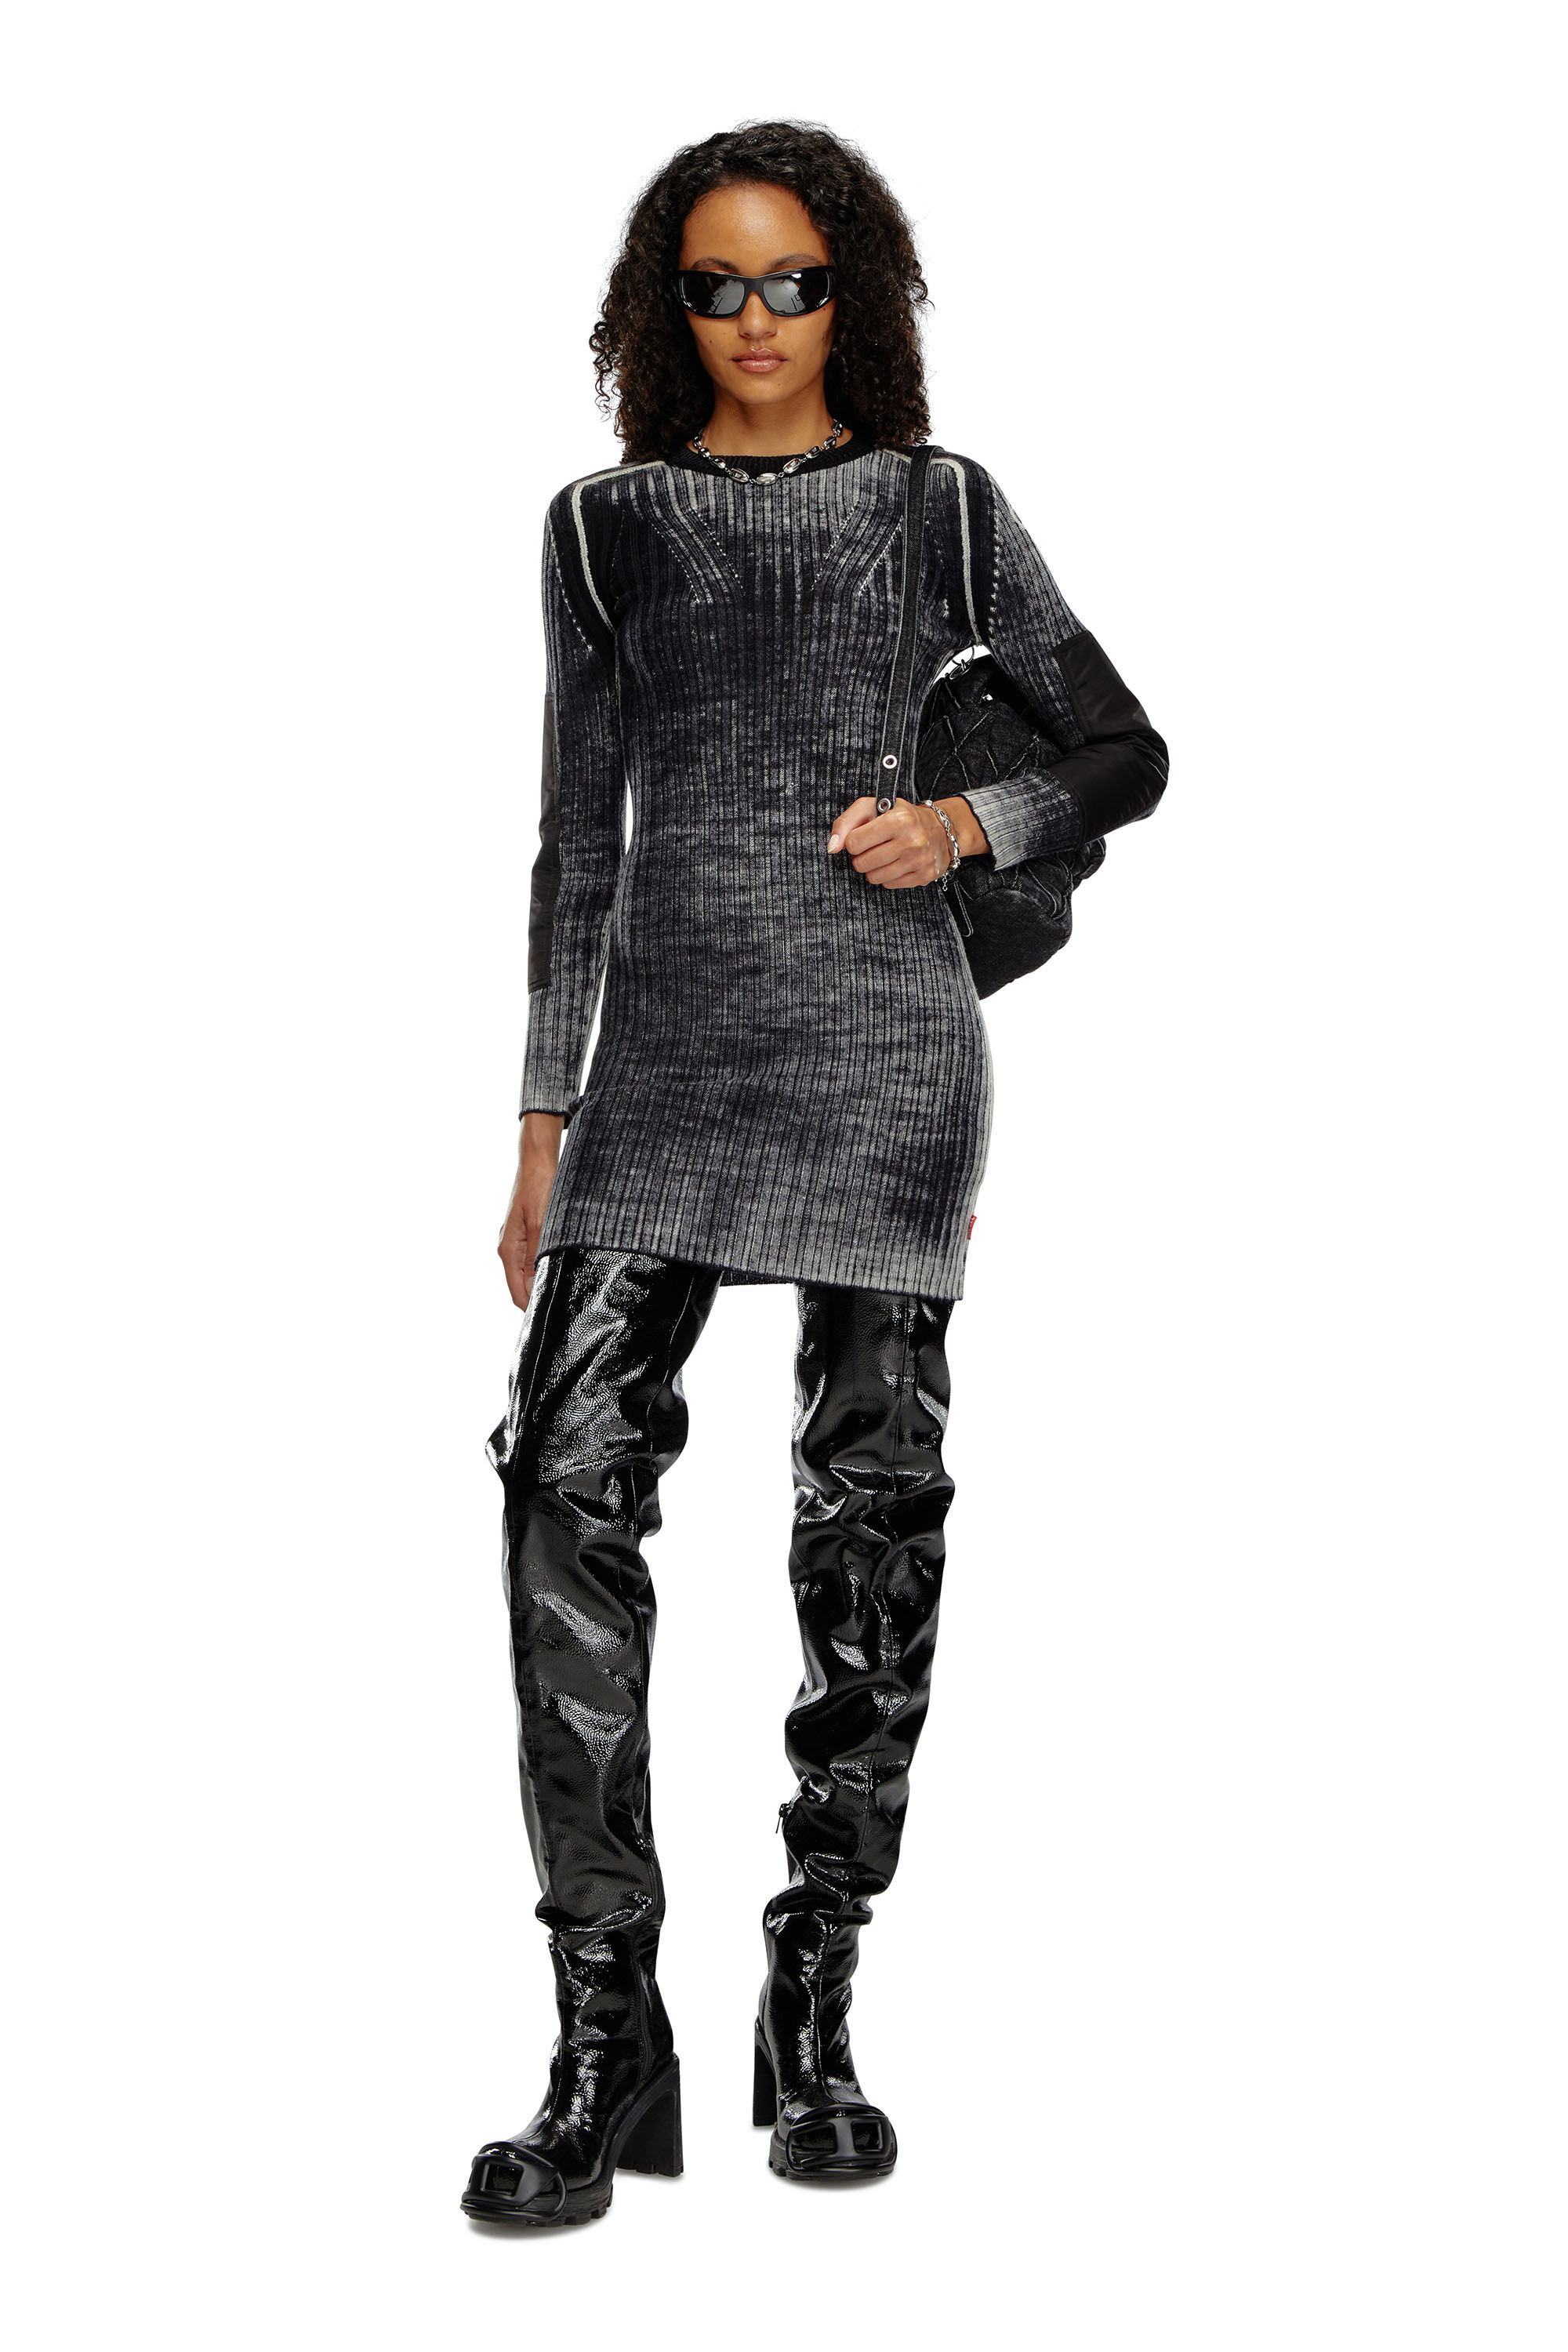 Diesel - M-ARTISTA, Woman Short dress in treated wool knit in Black - Image 1